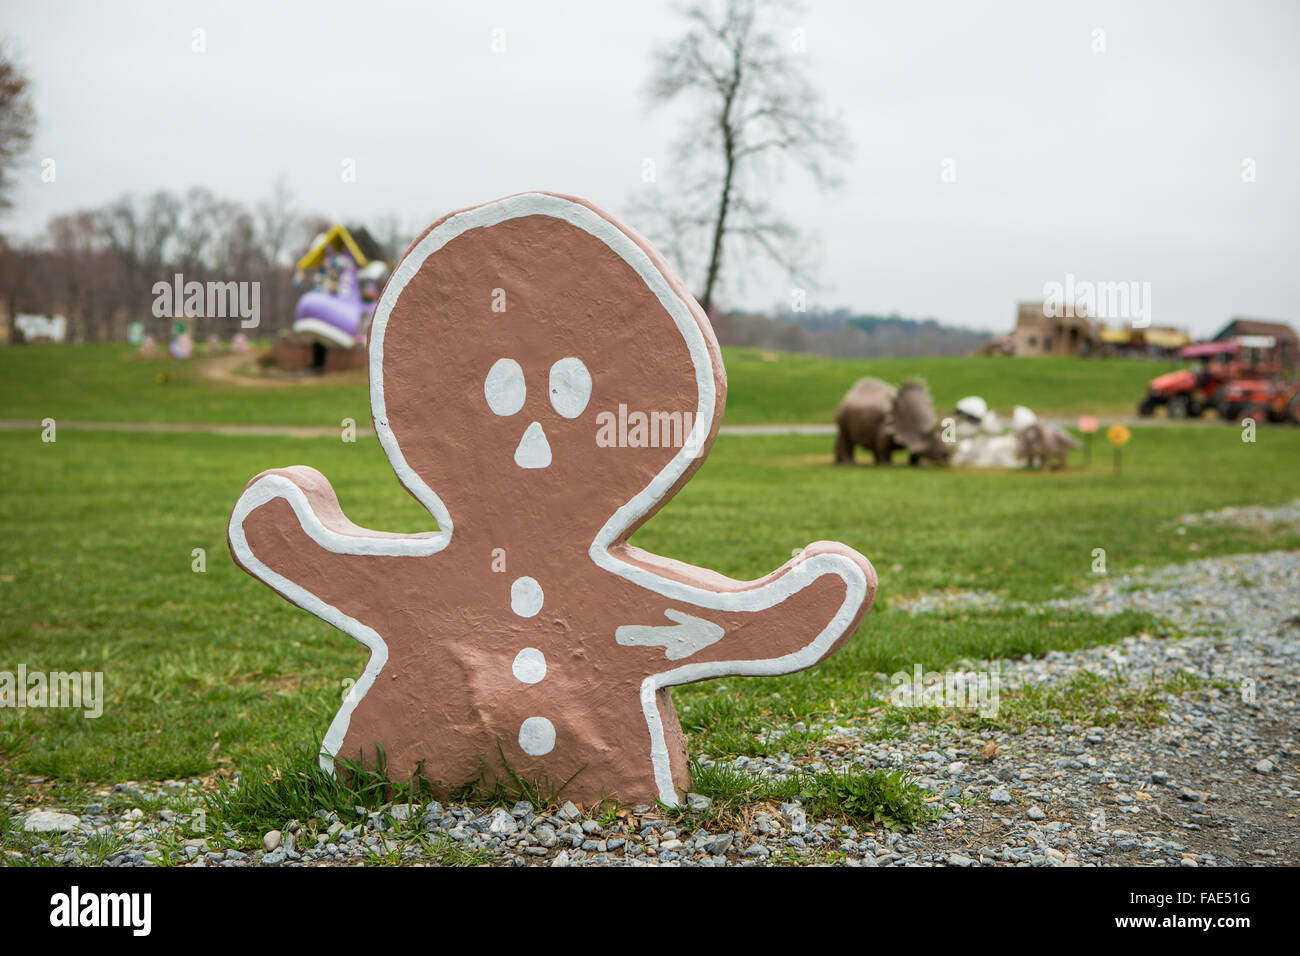 Gingerbread Man escultura en una granja Foto de stock